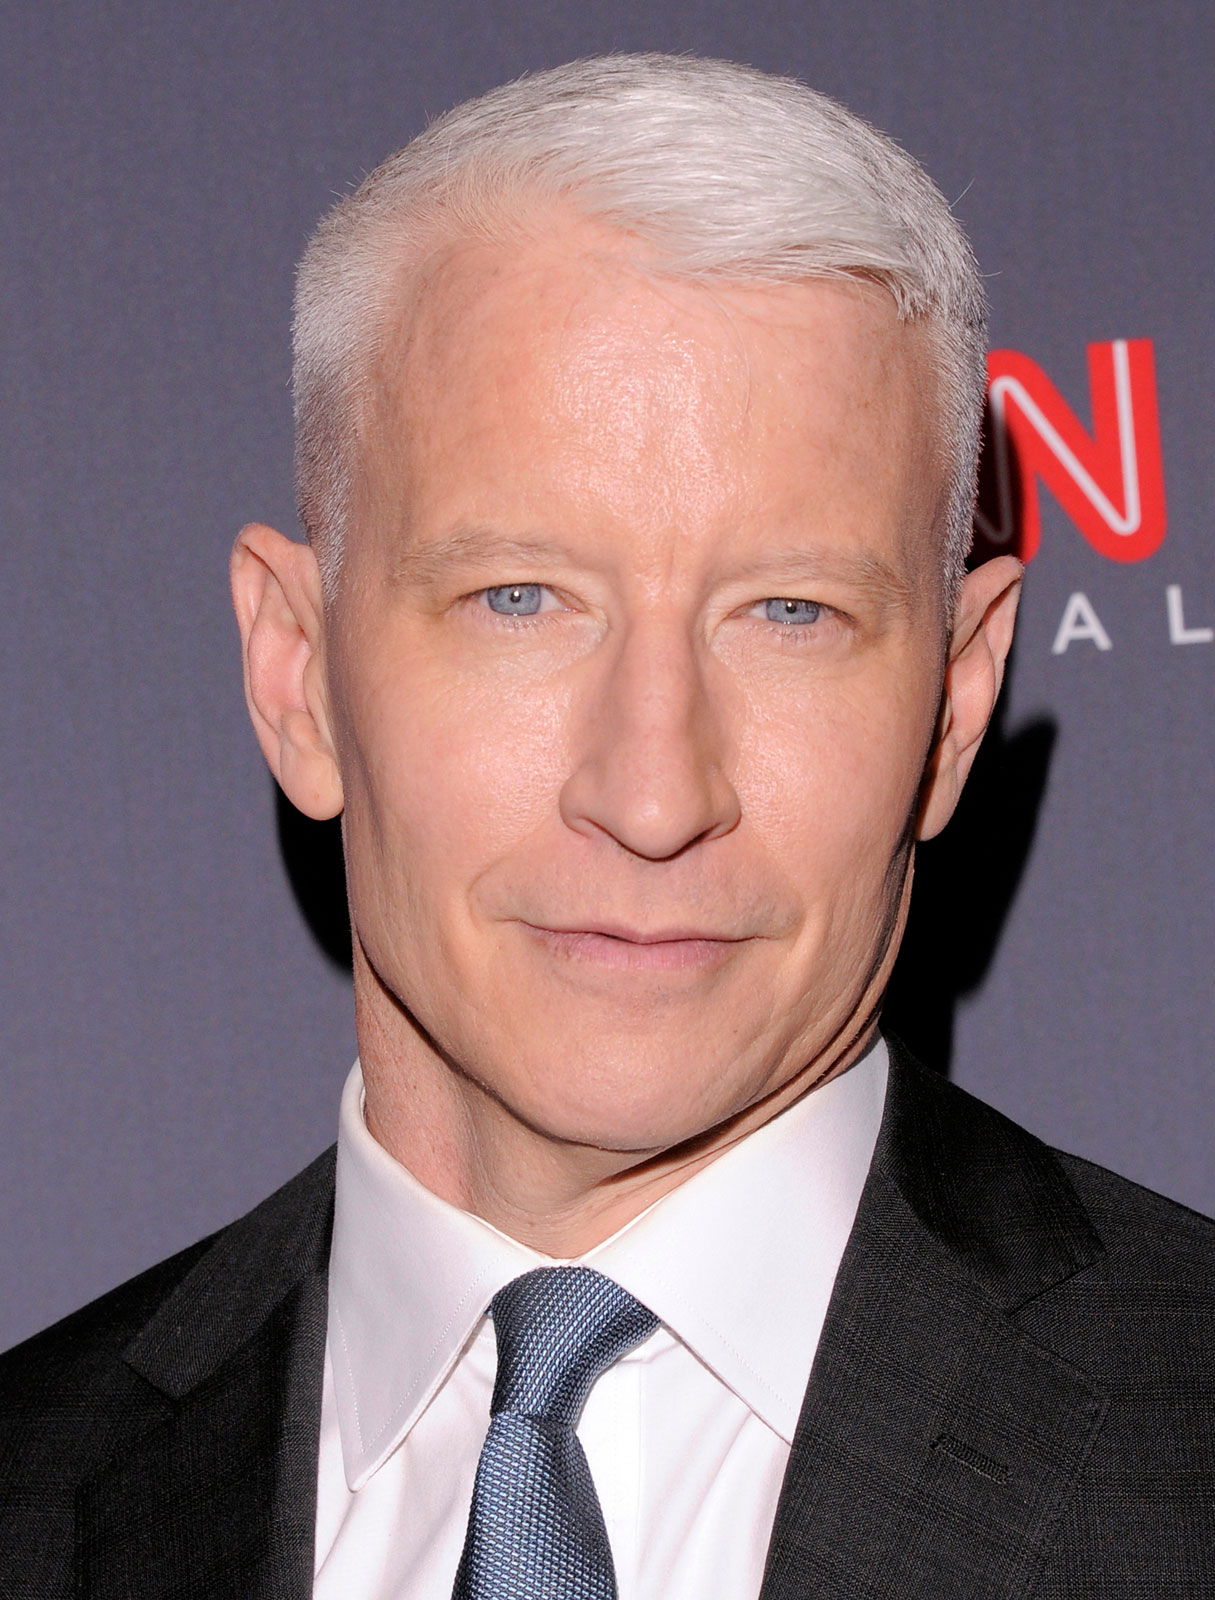 Anderson Cooper | Game Shows Wiki | Fandom